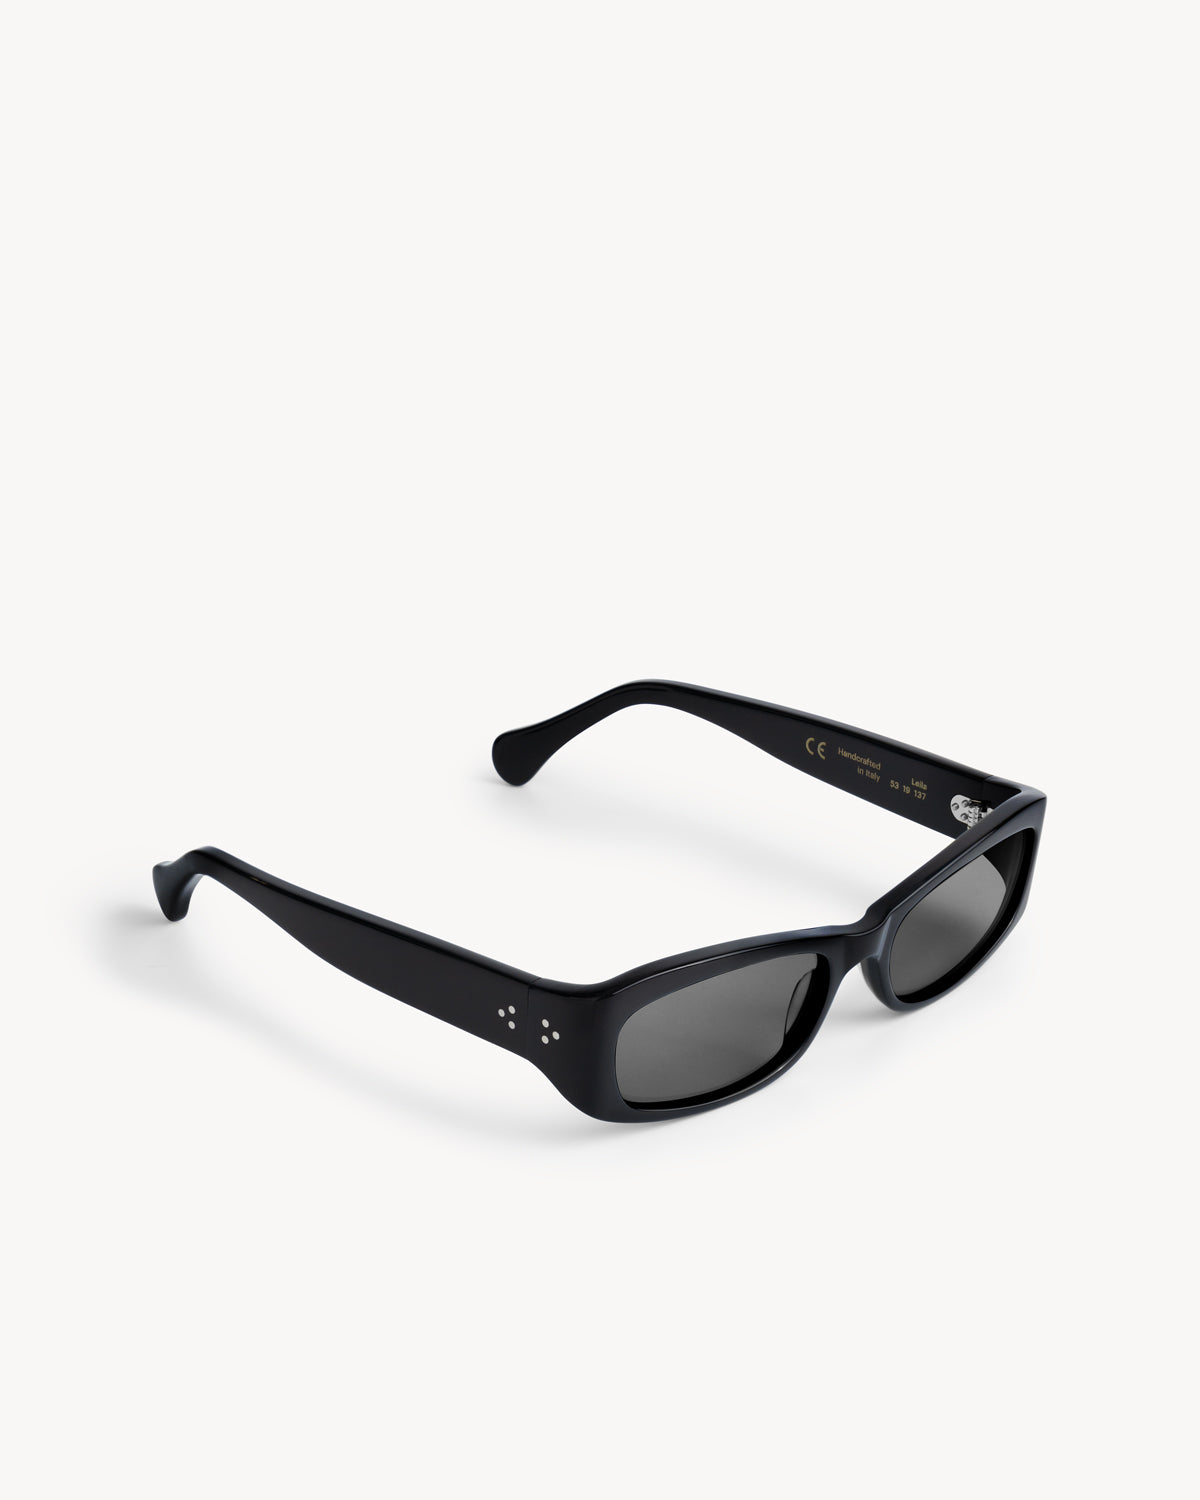 Leila | Black Acetate | Black Lens | Port Tanger Sunglasses – Port 